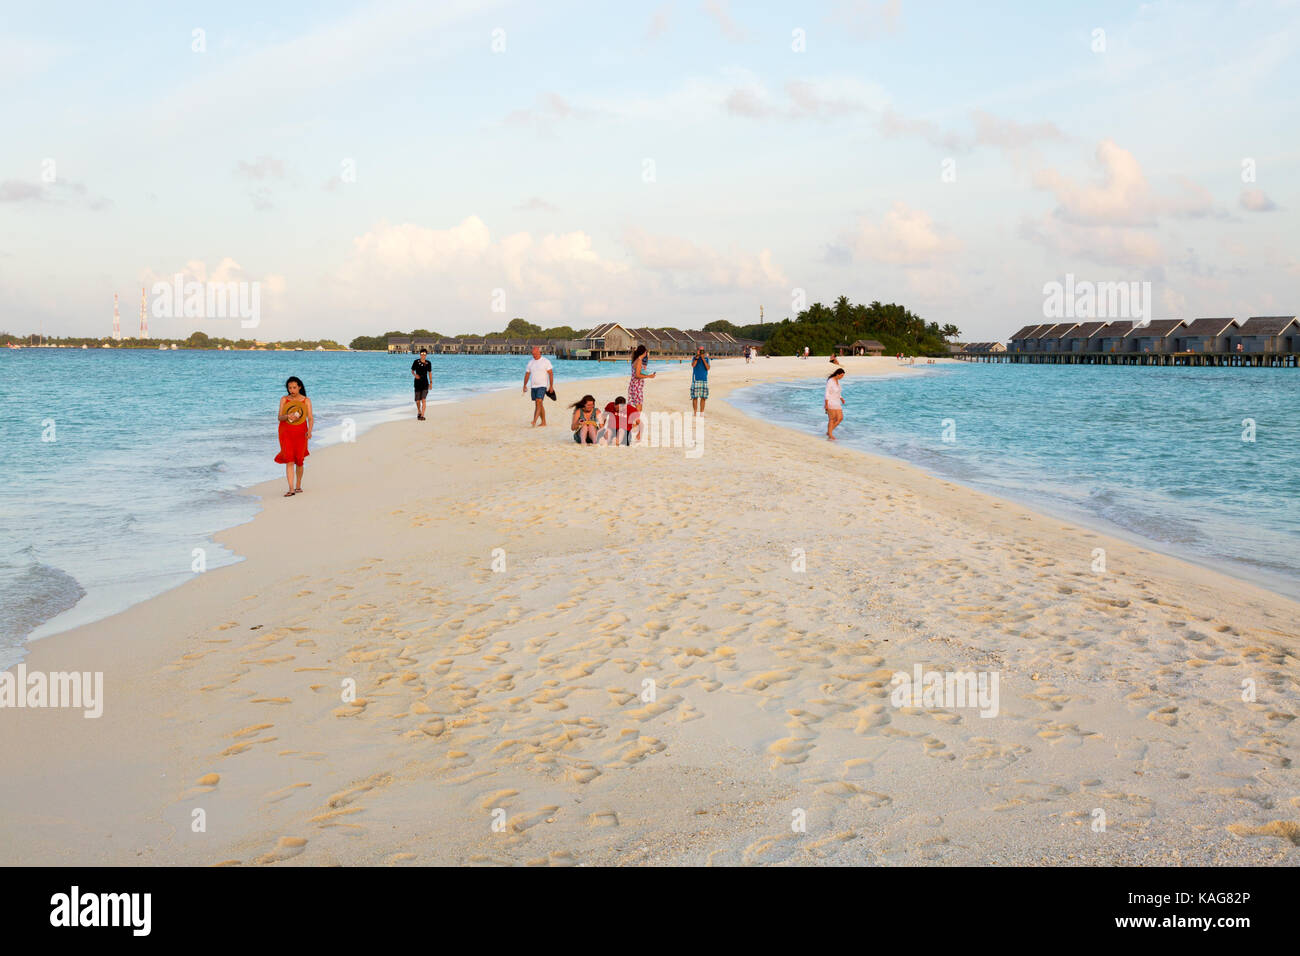 Maldives Beach - touristes sur le Kuramathi Island resort, Sandspit, les Maldives, l'Asie Banque D'Images